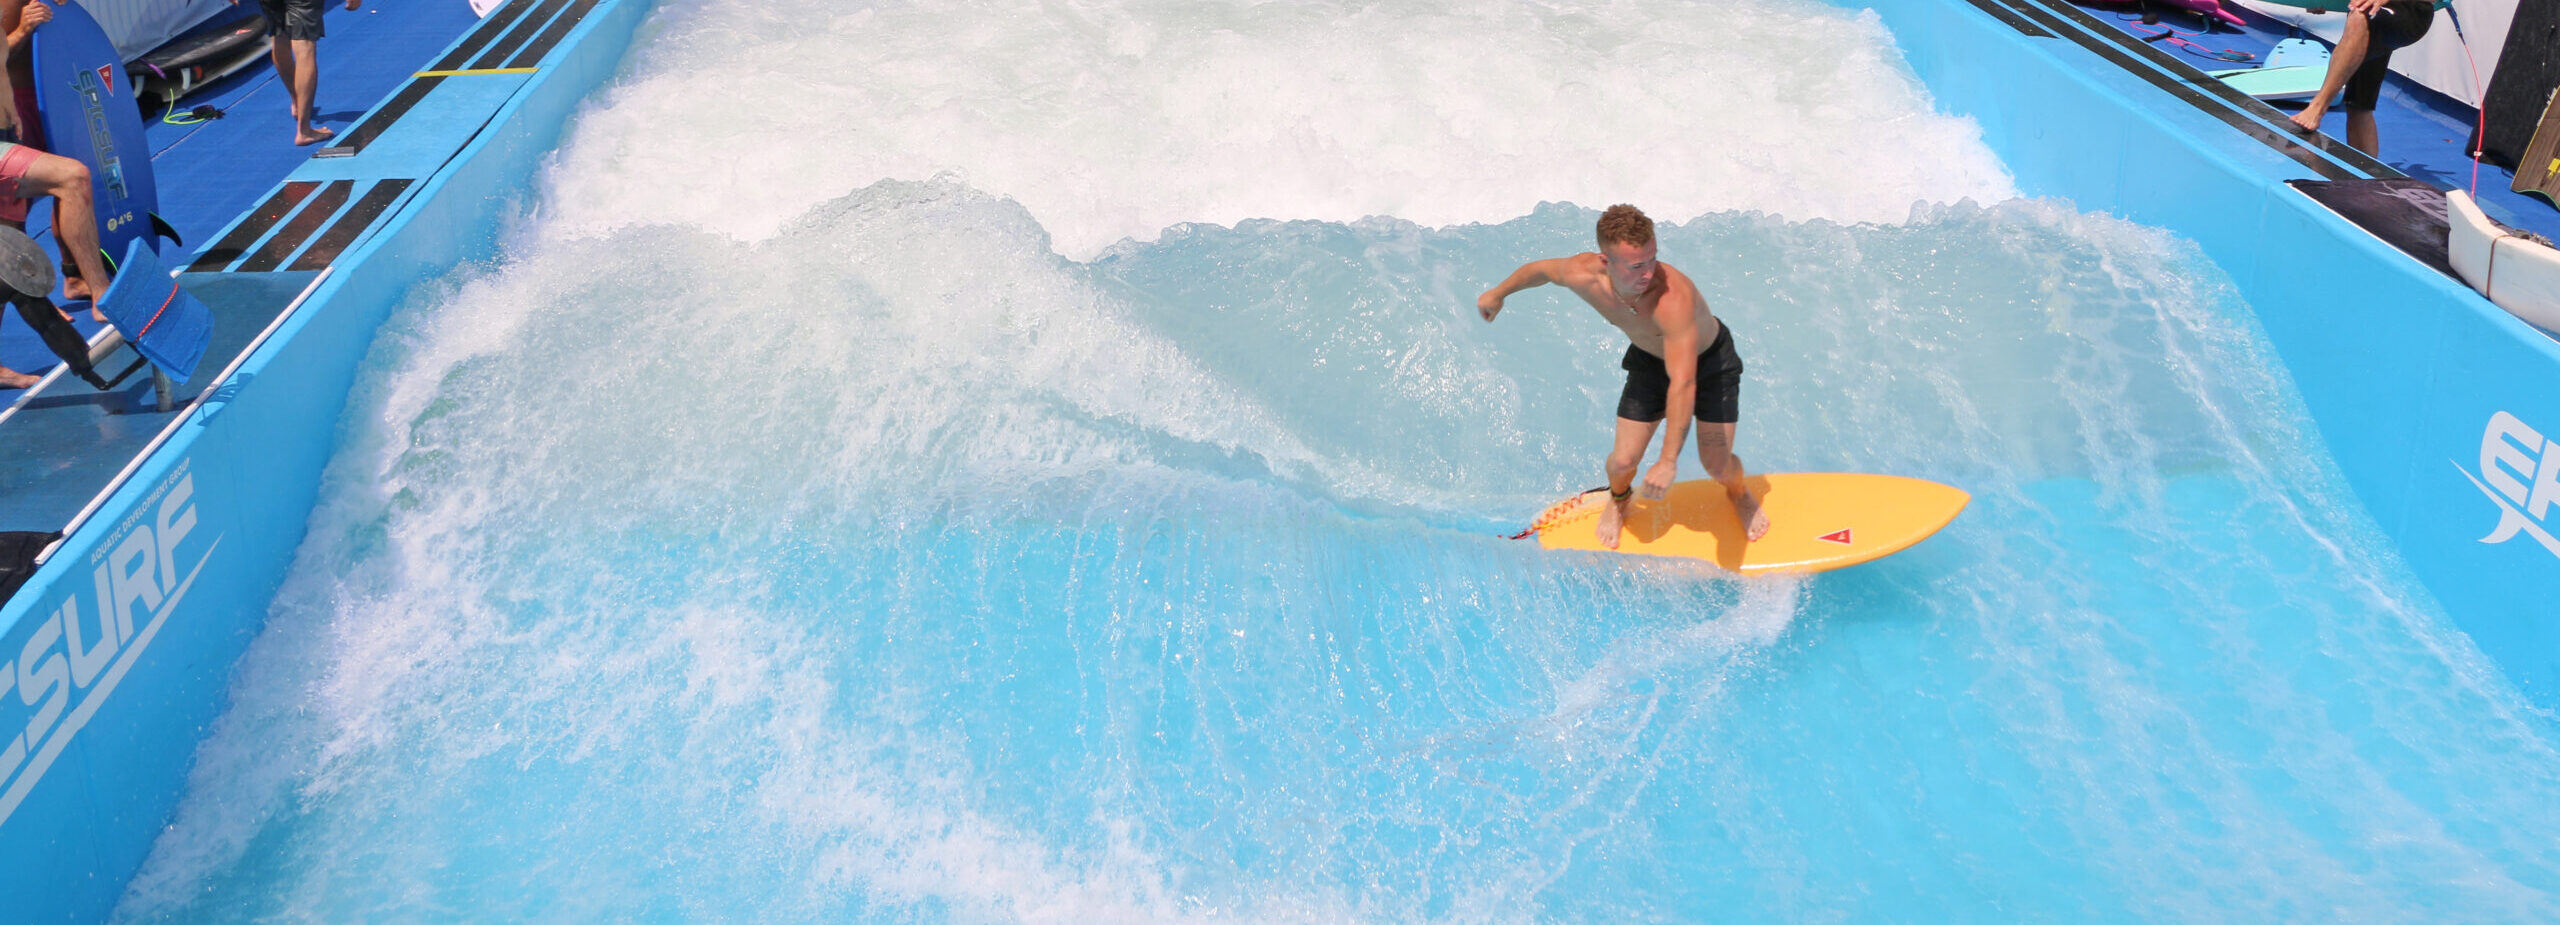 Man surfing on EpicSurf